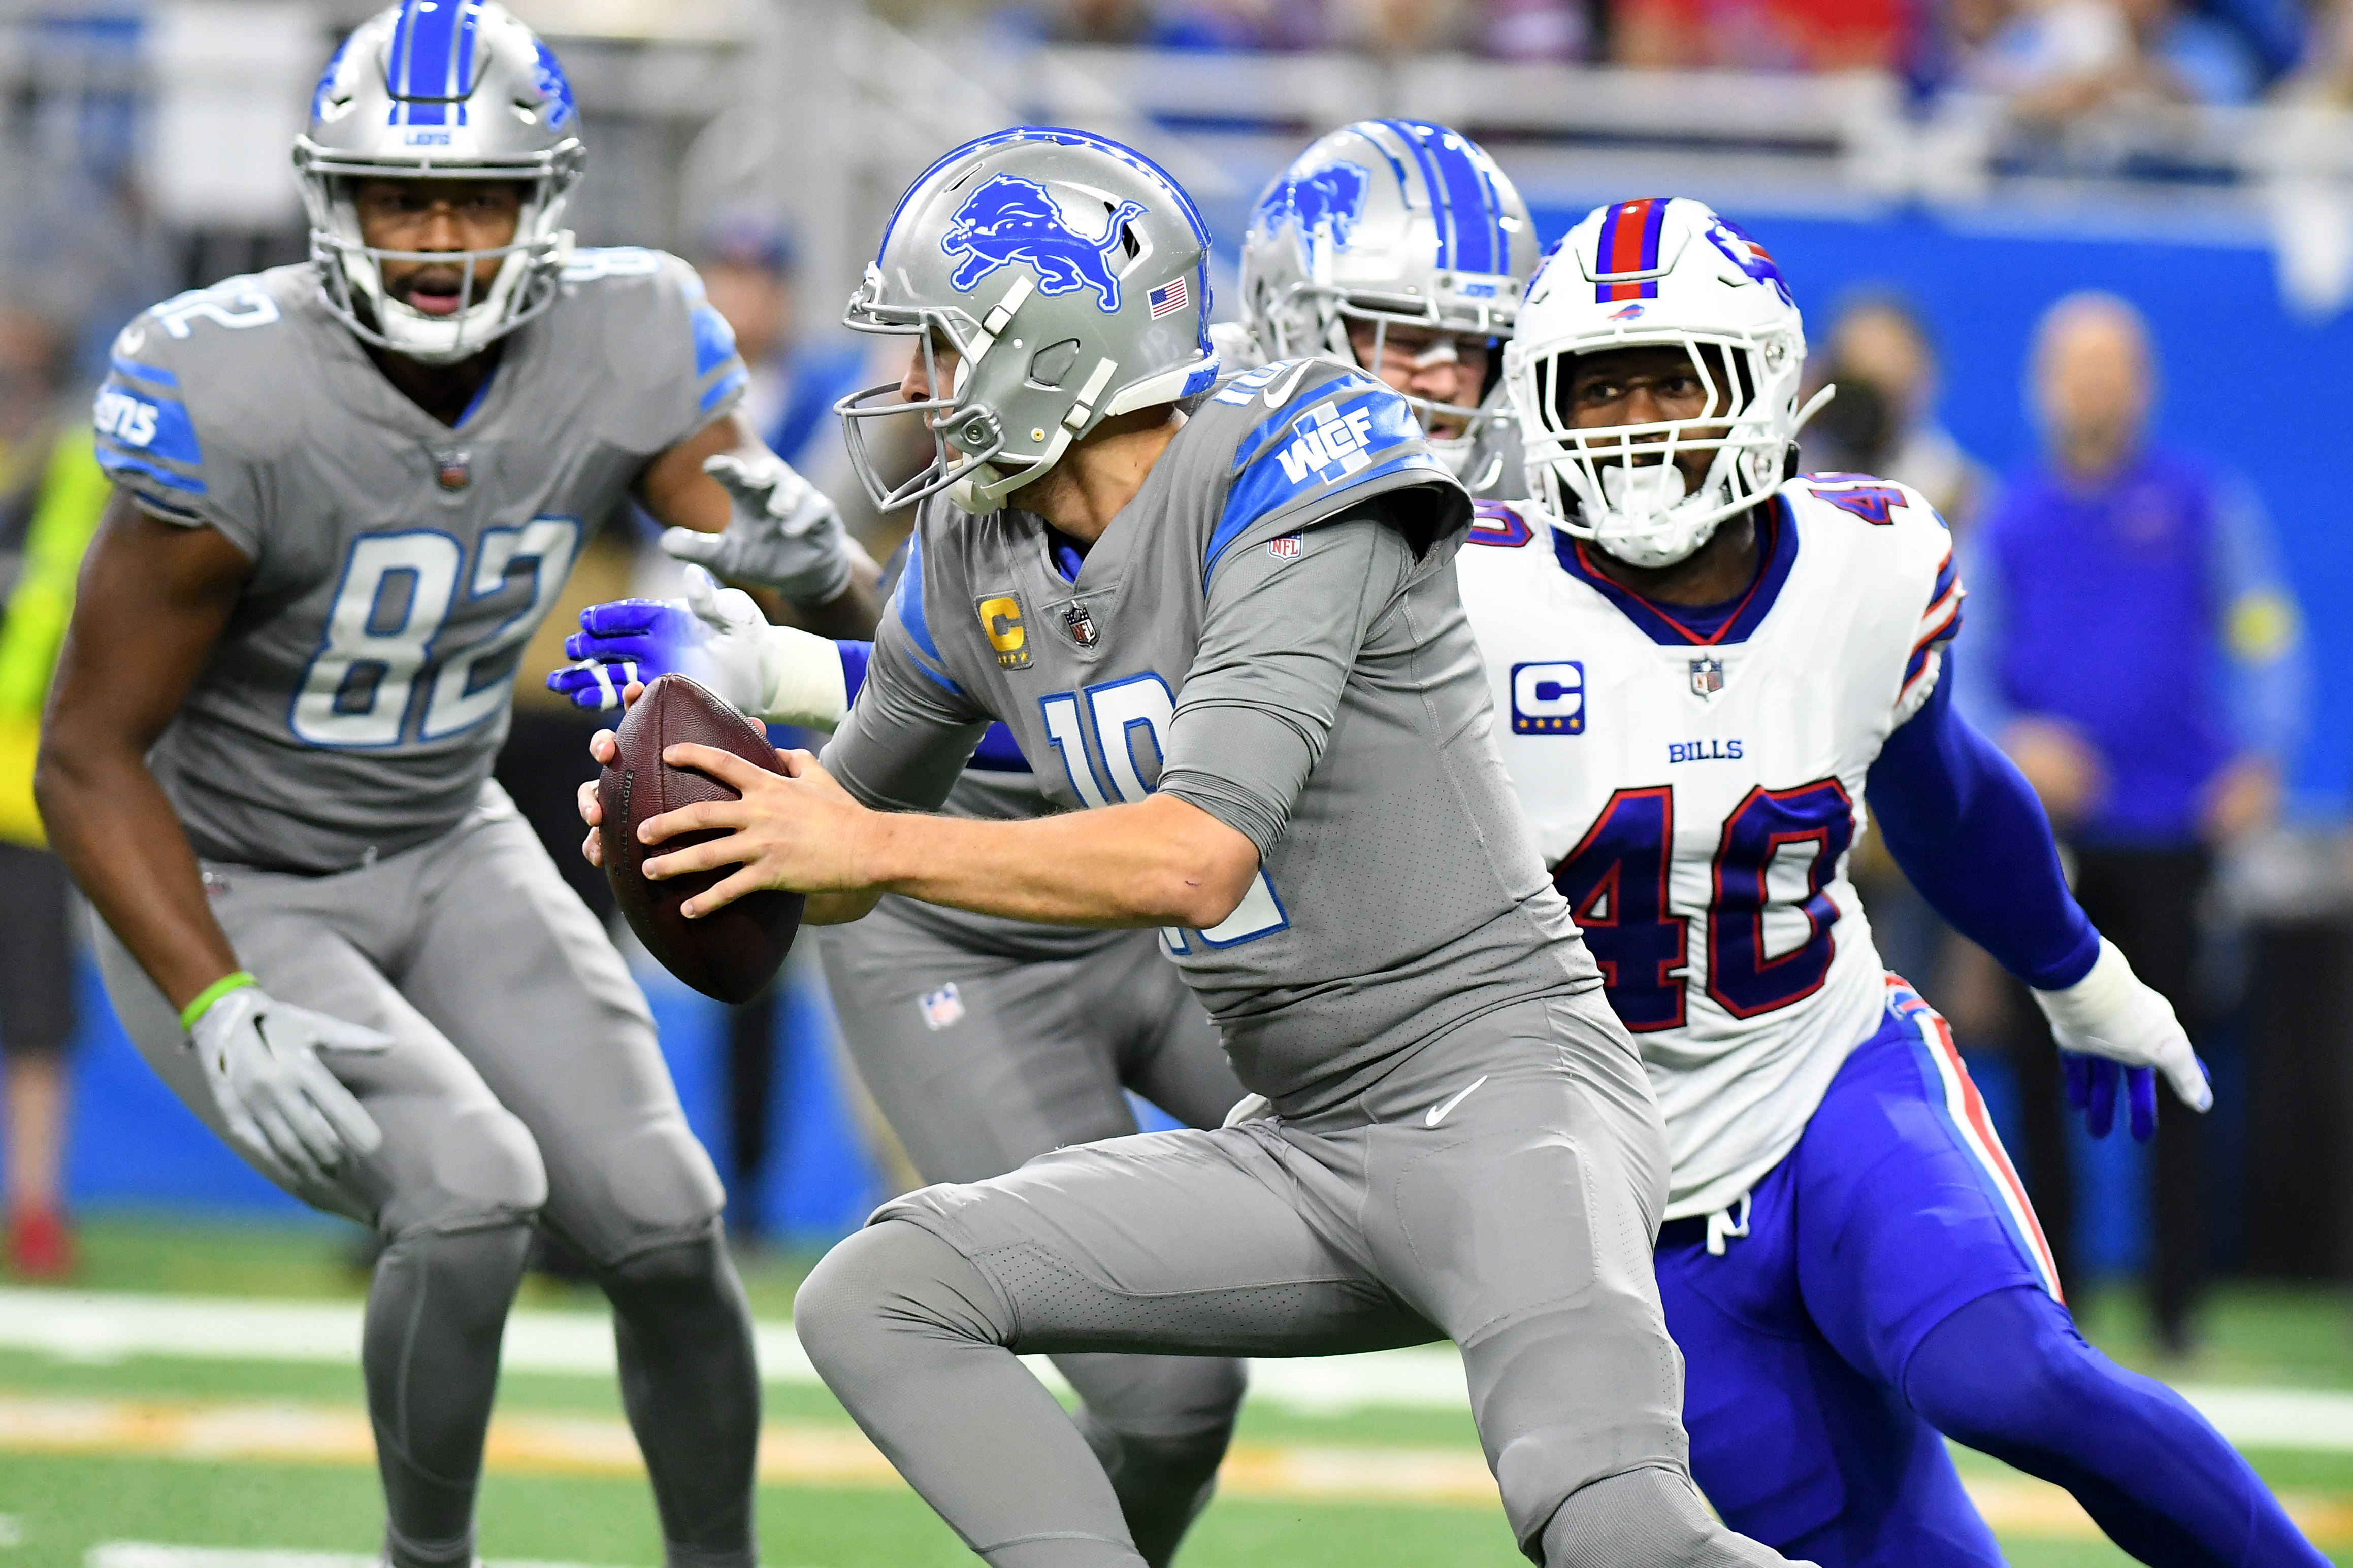 Bills vs. Lions Thanksgiving Thriller: 3 Observations From Buffalo Big Win